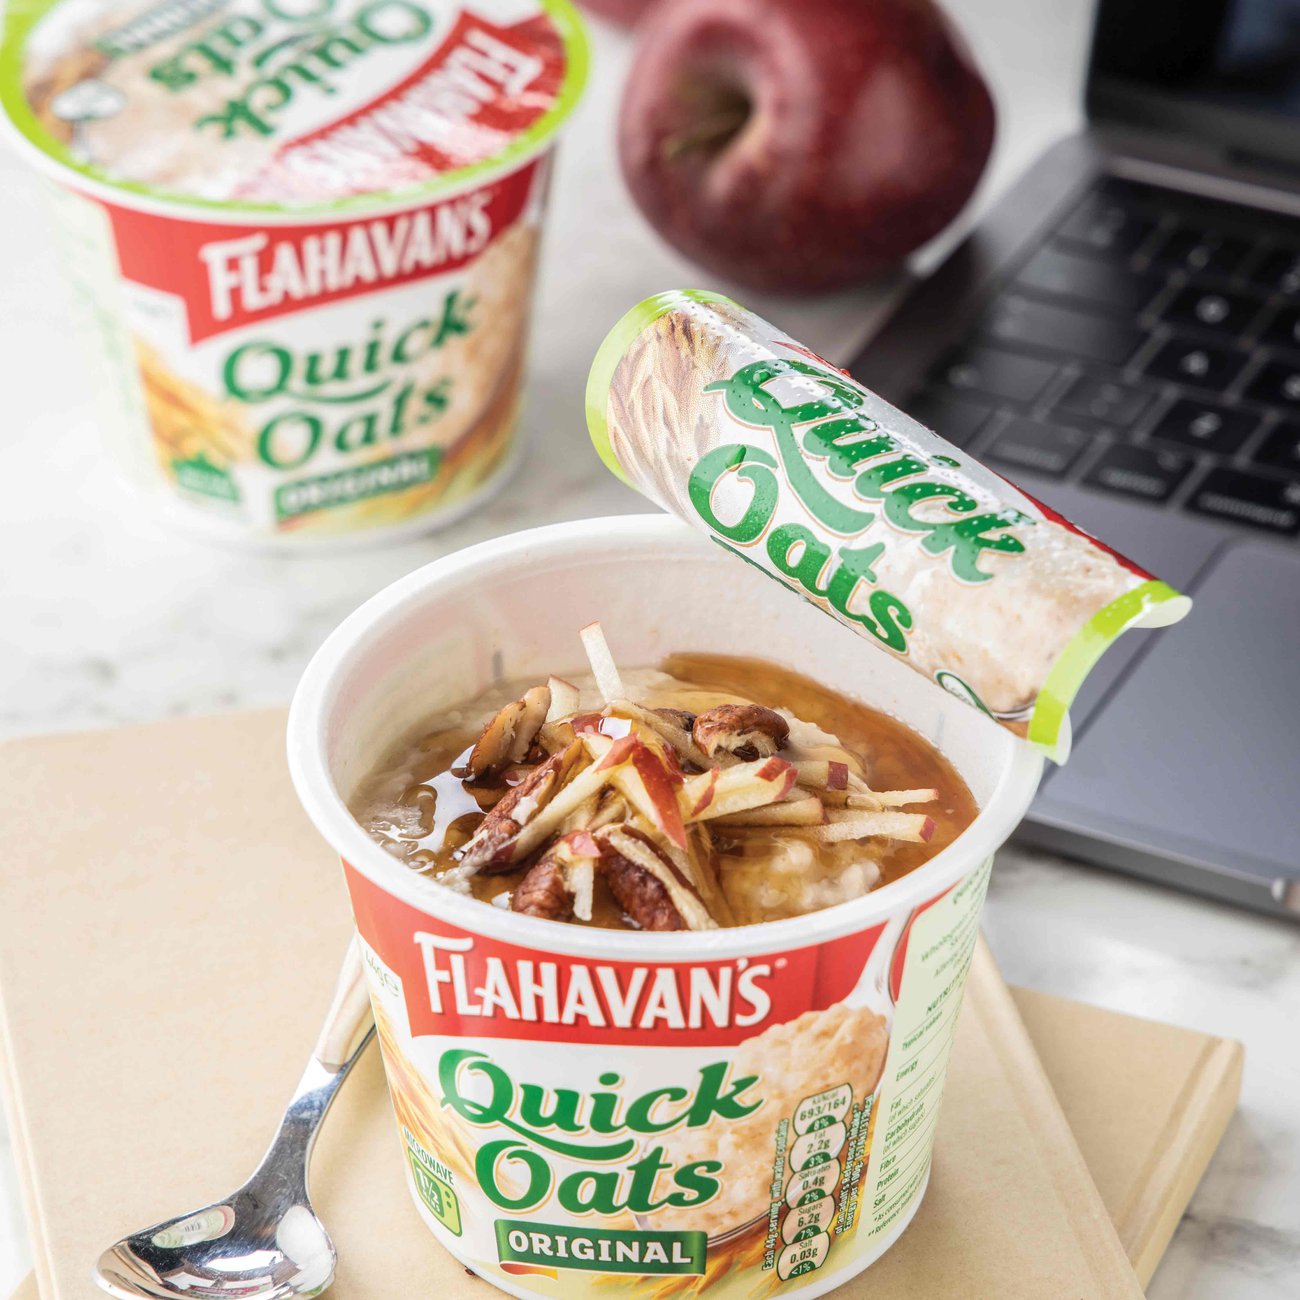 Flahavan’s Quick Oats are the ideal breakfast snack